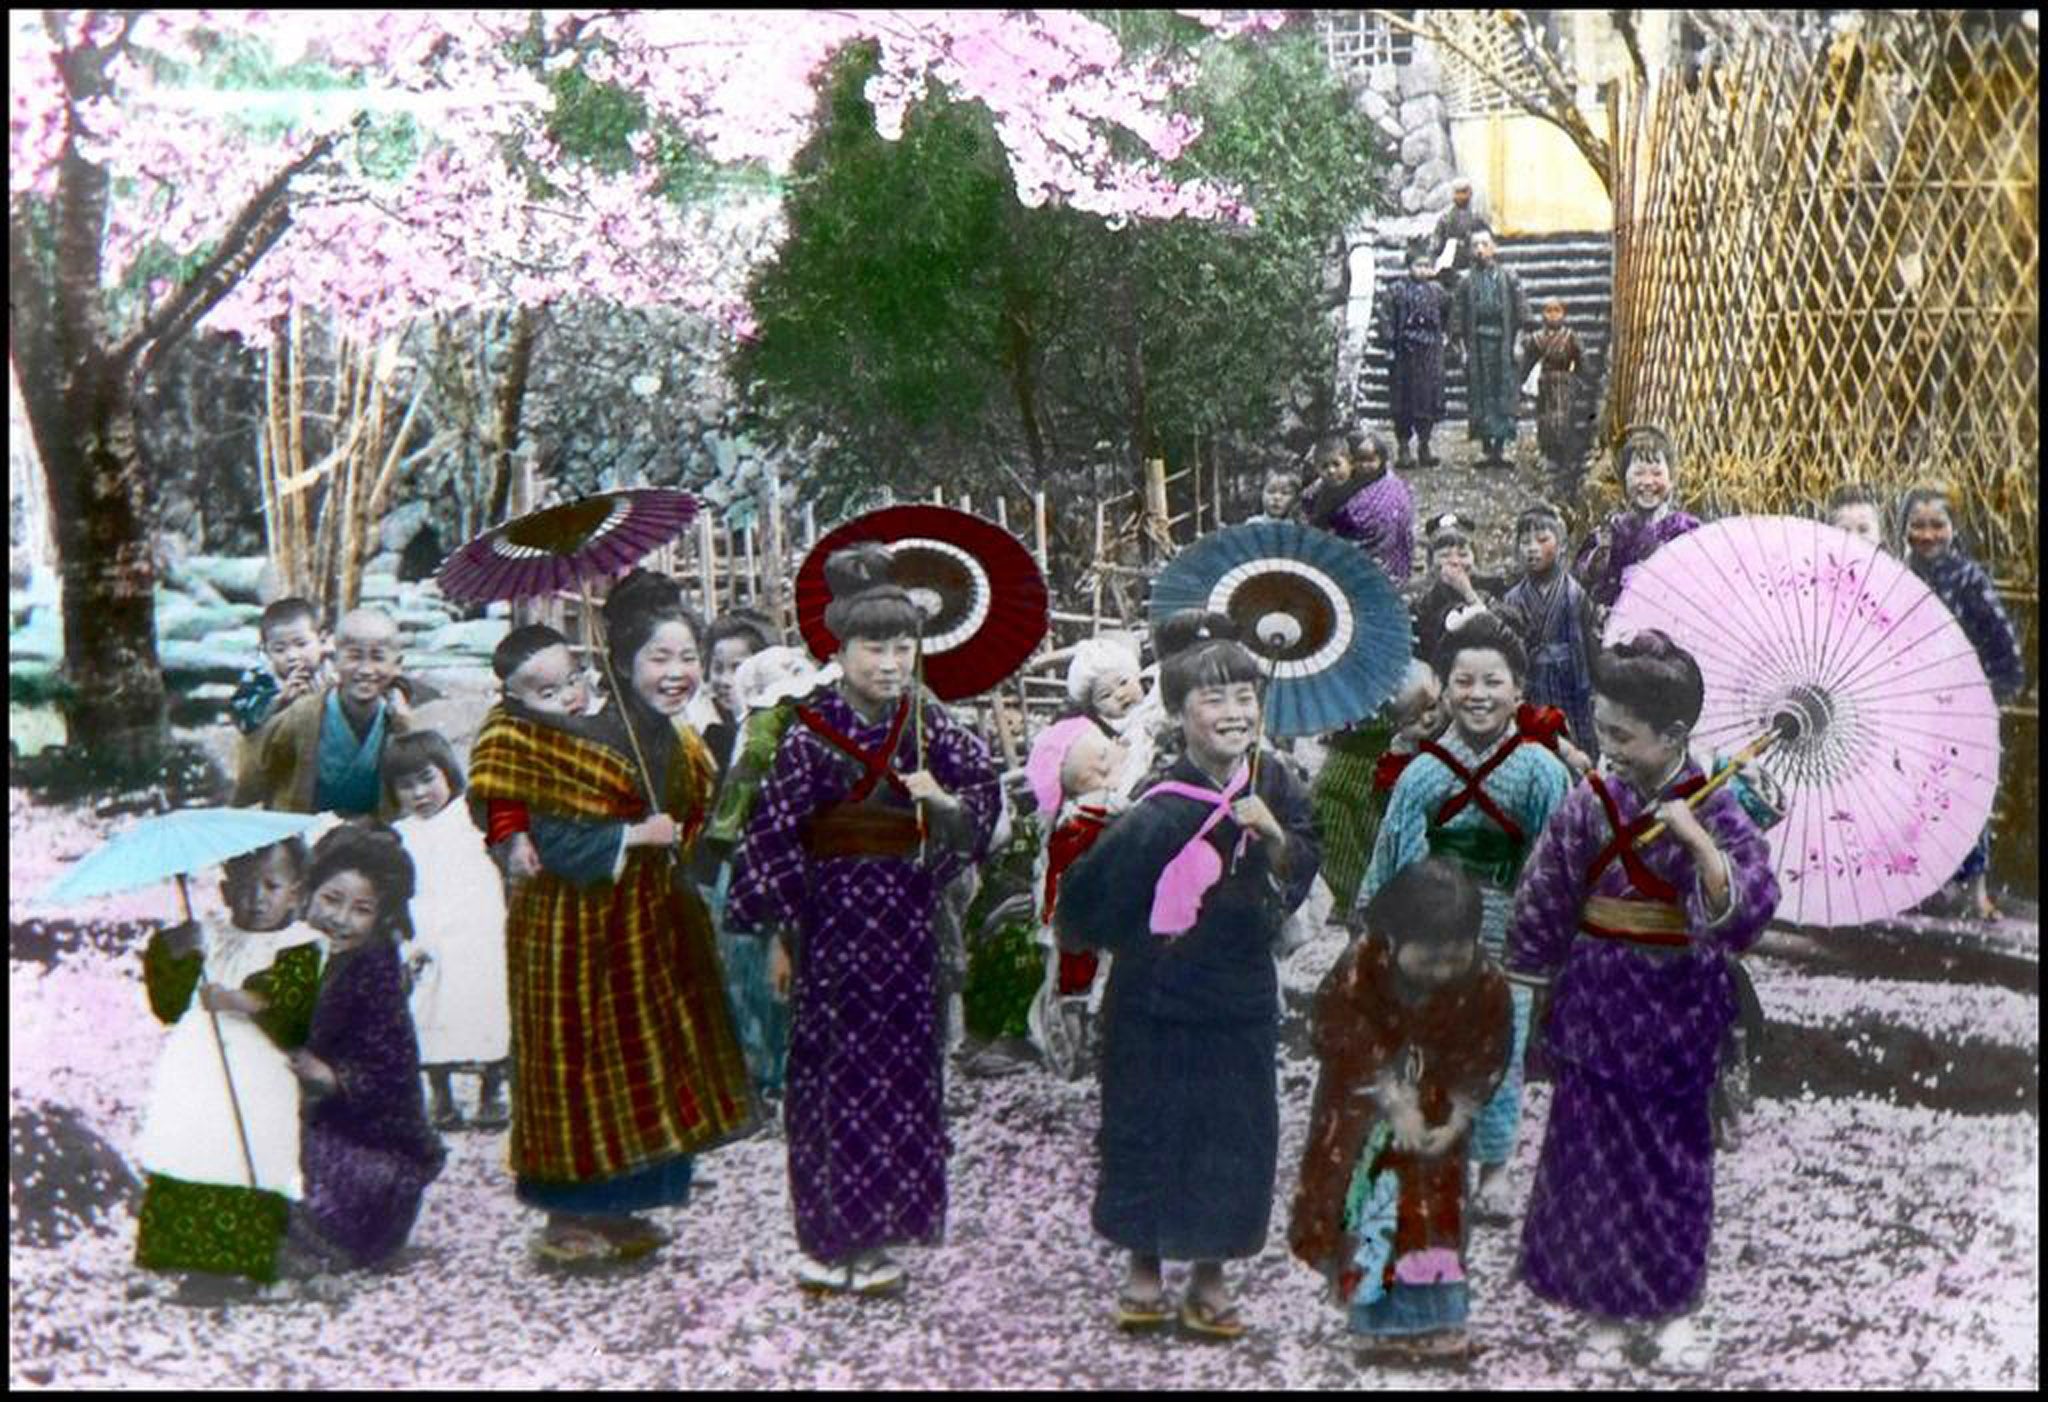 Children in kimono in Old Japan